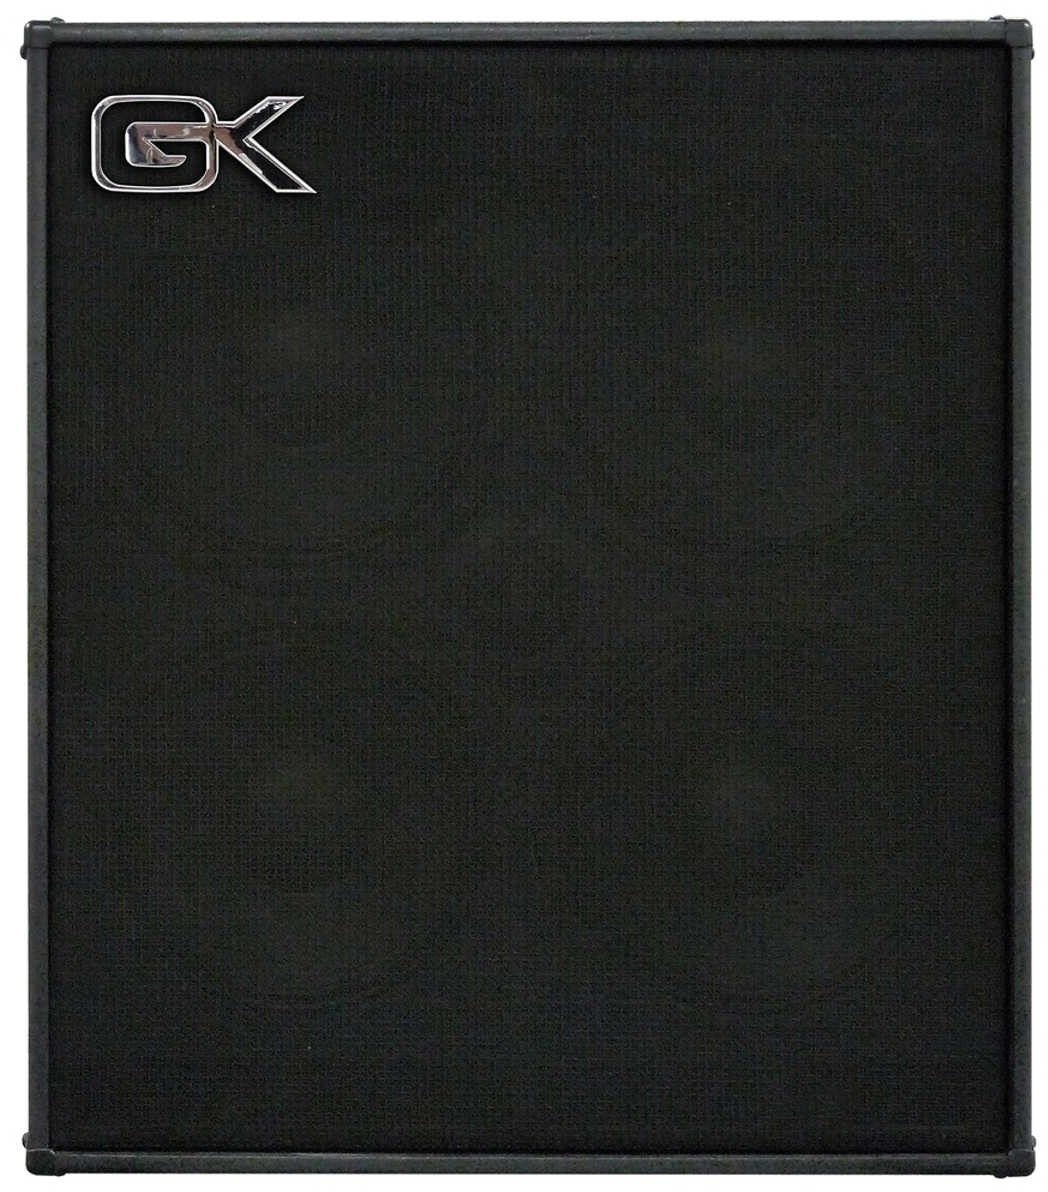 Bass Cabinet Gallien Krueger CX-410 4 Ohm